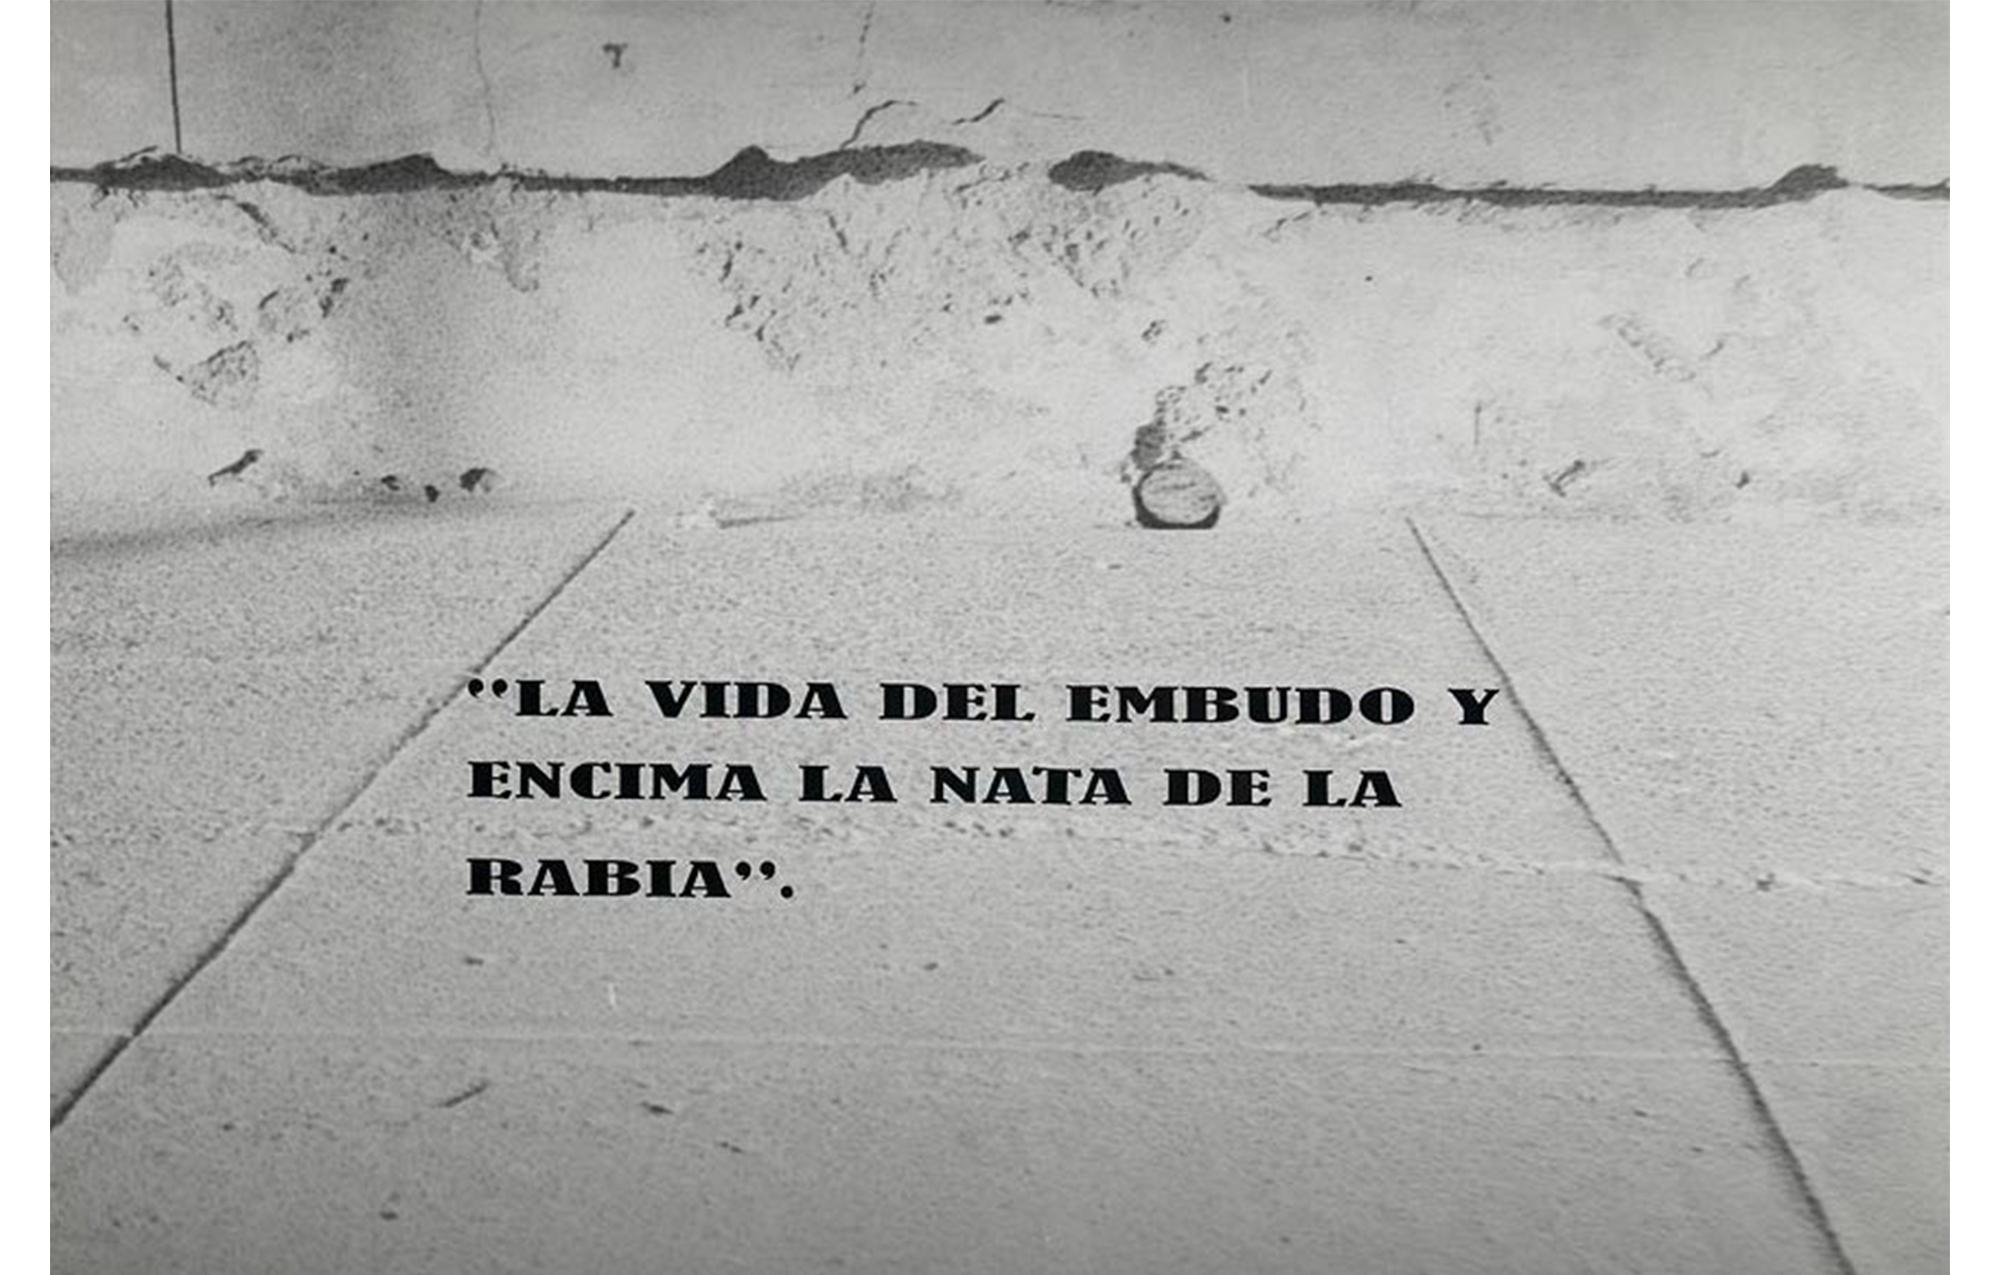 concrete wall with applied text: "LA VIDA DEL EMBUDO Y / ENCIMA LA NATA DE LA / BARIA".